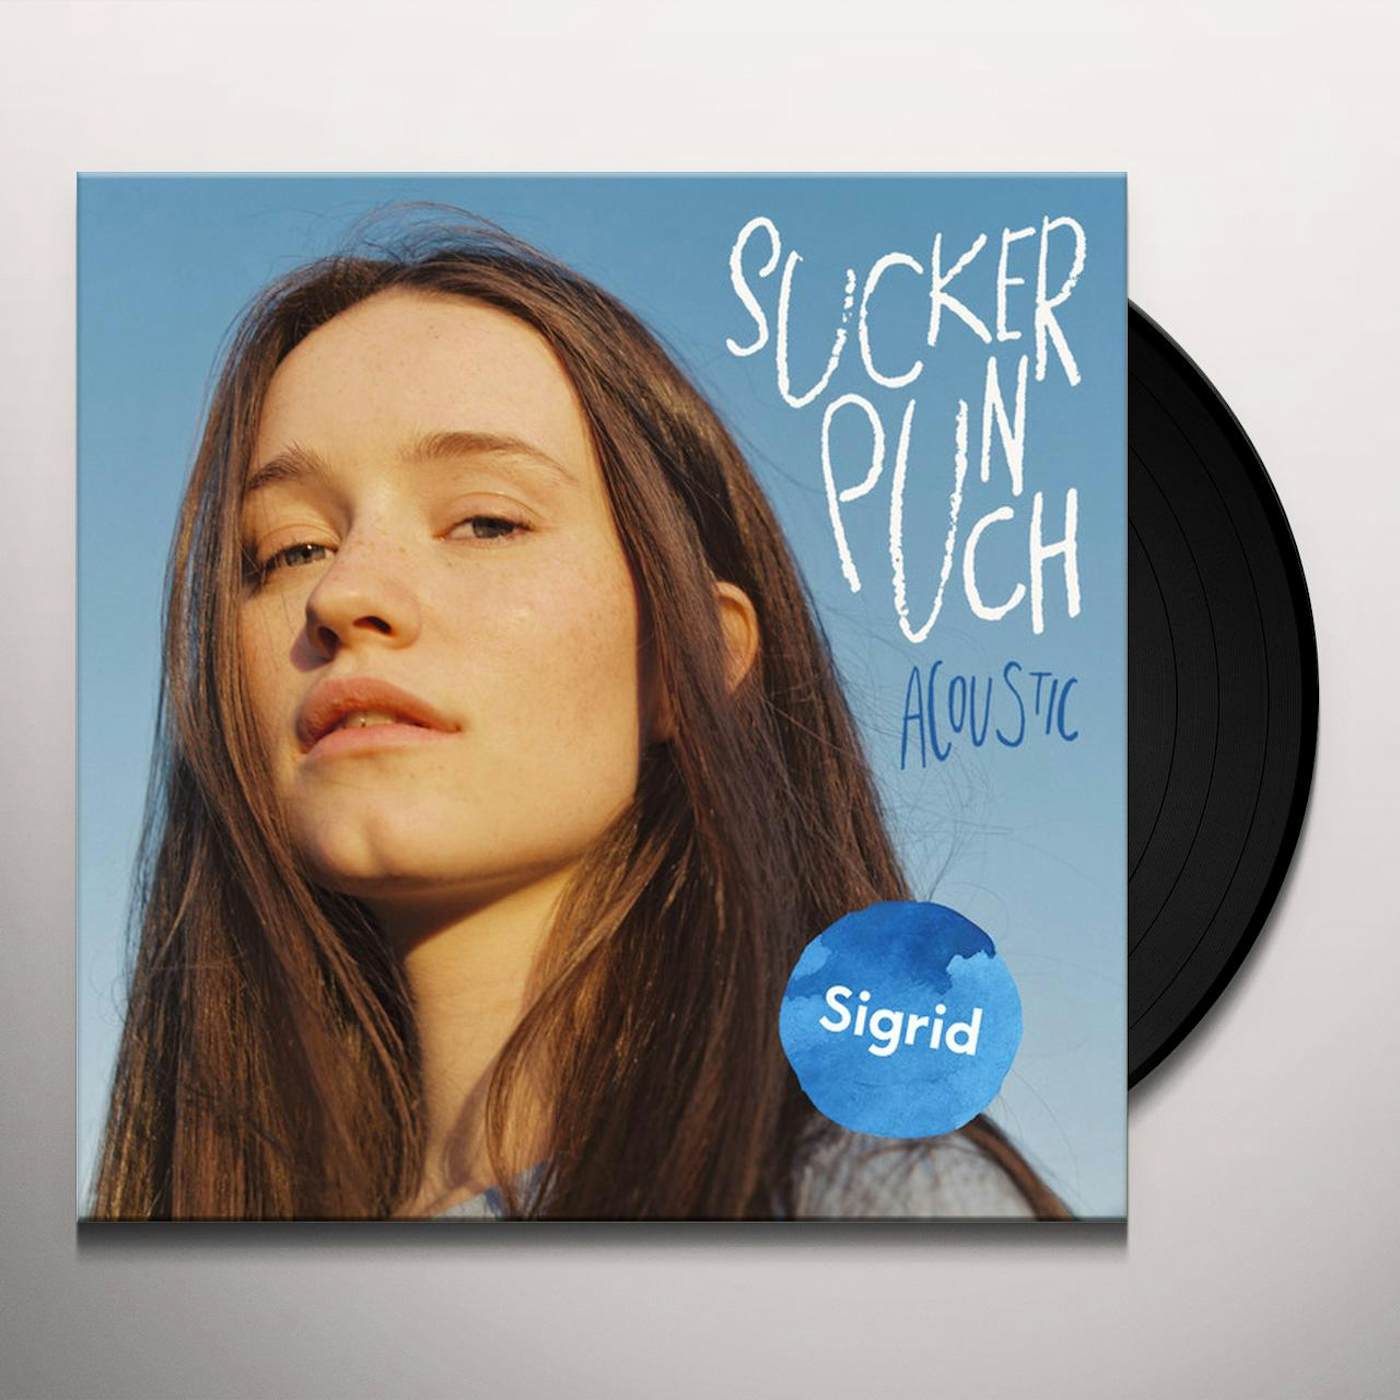 Sigrid Sucker Punch Vinyl Record